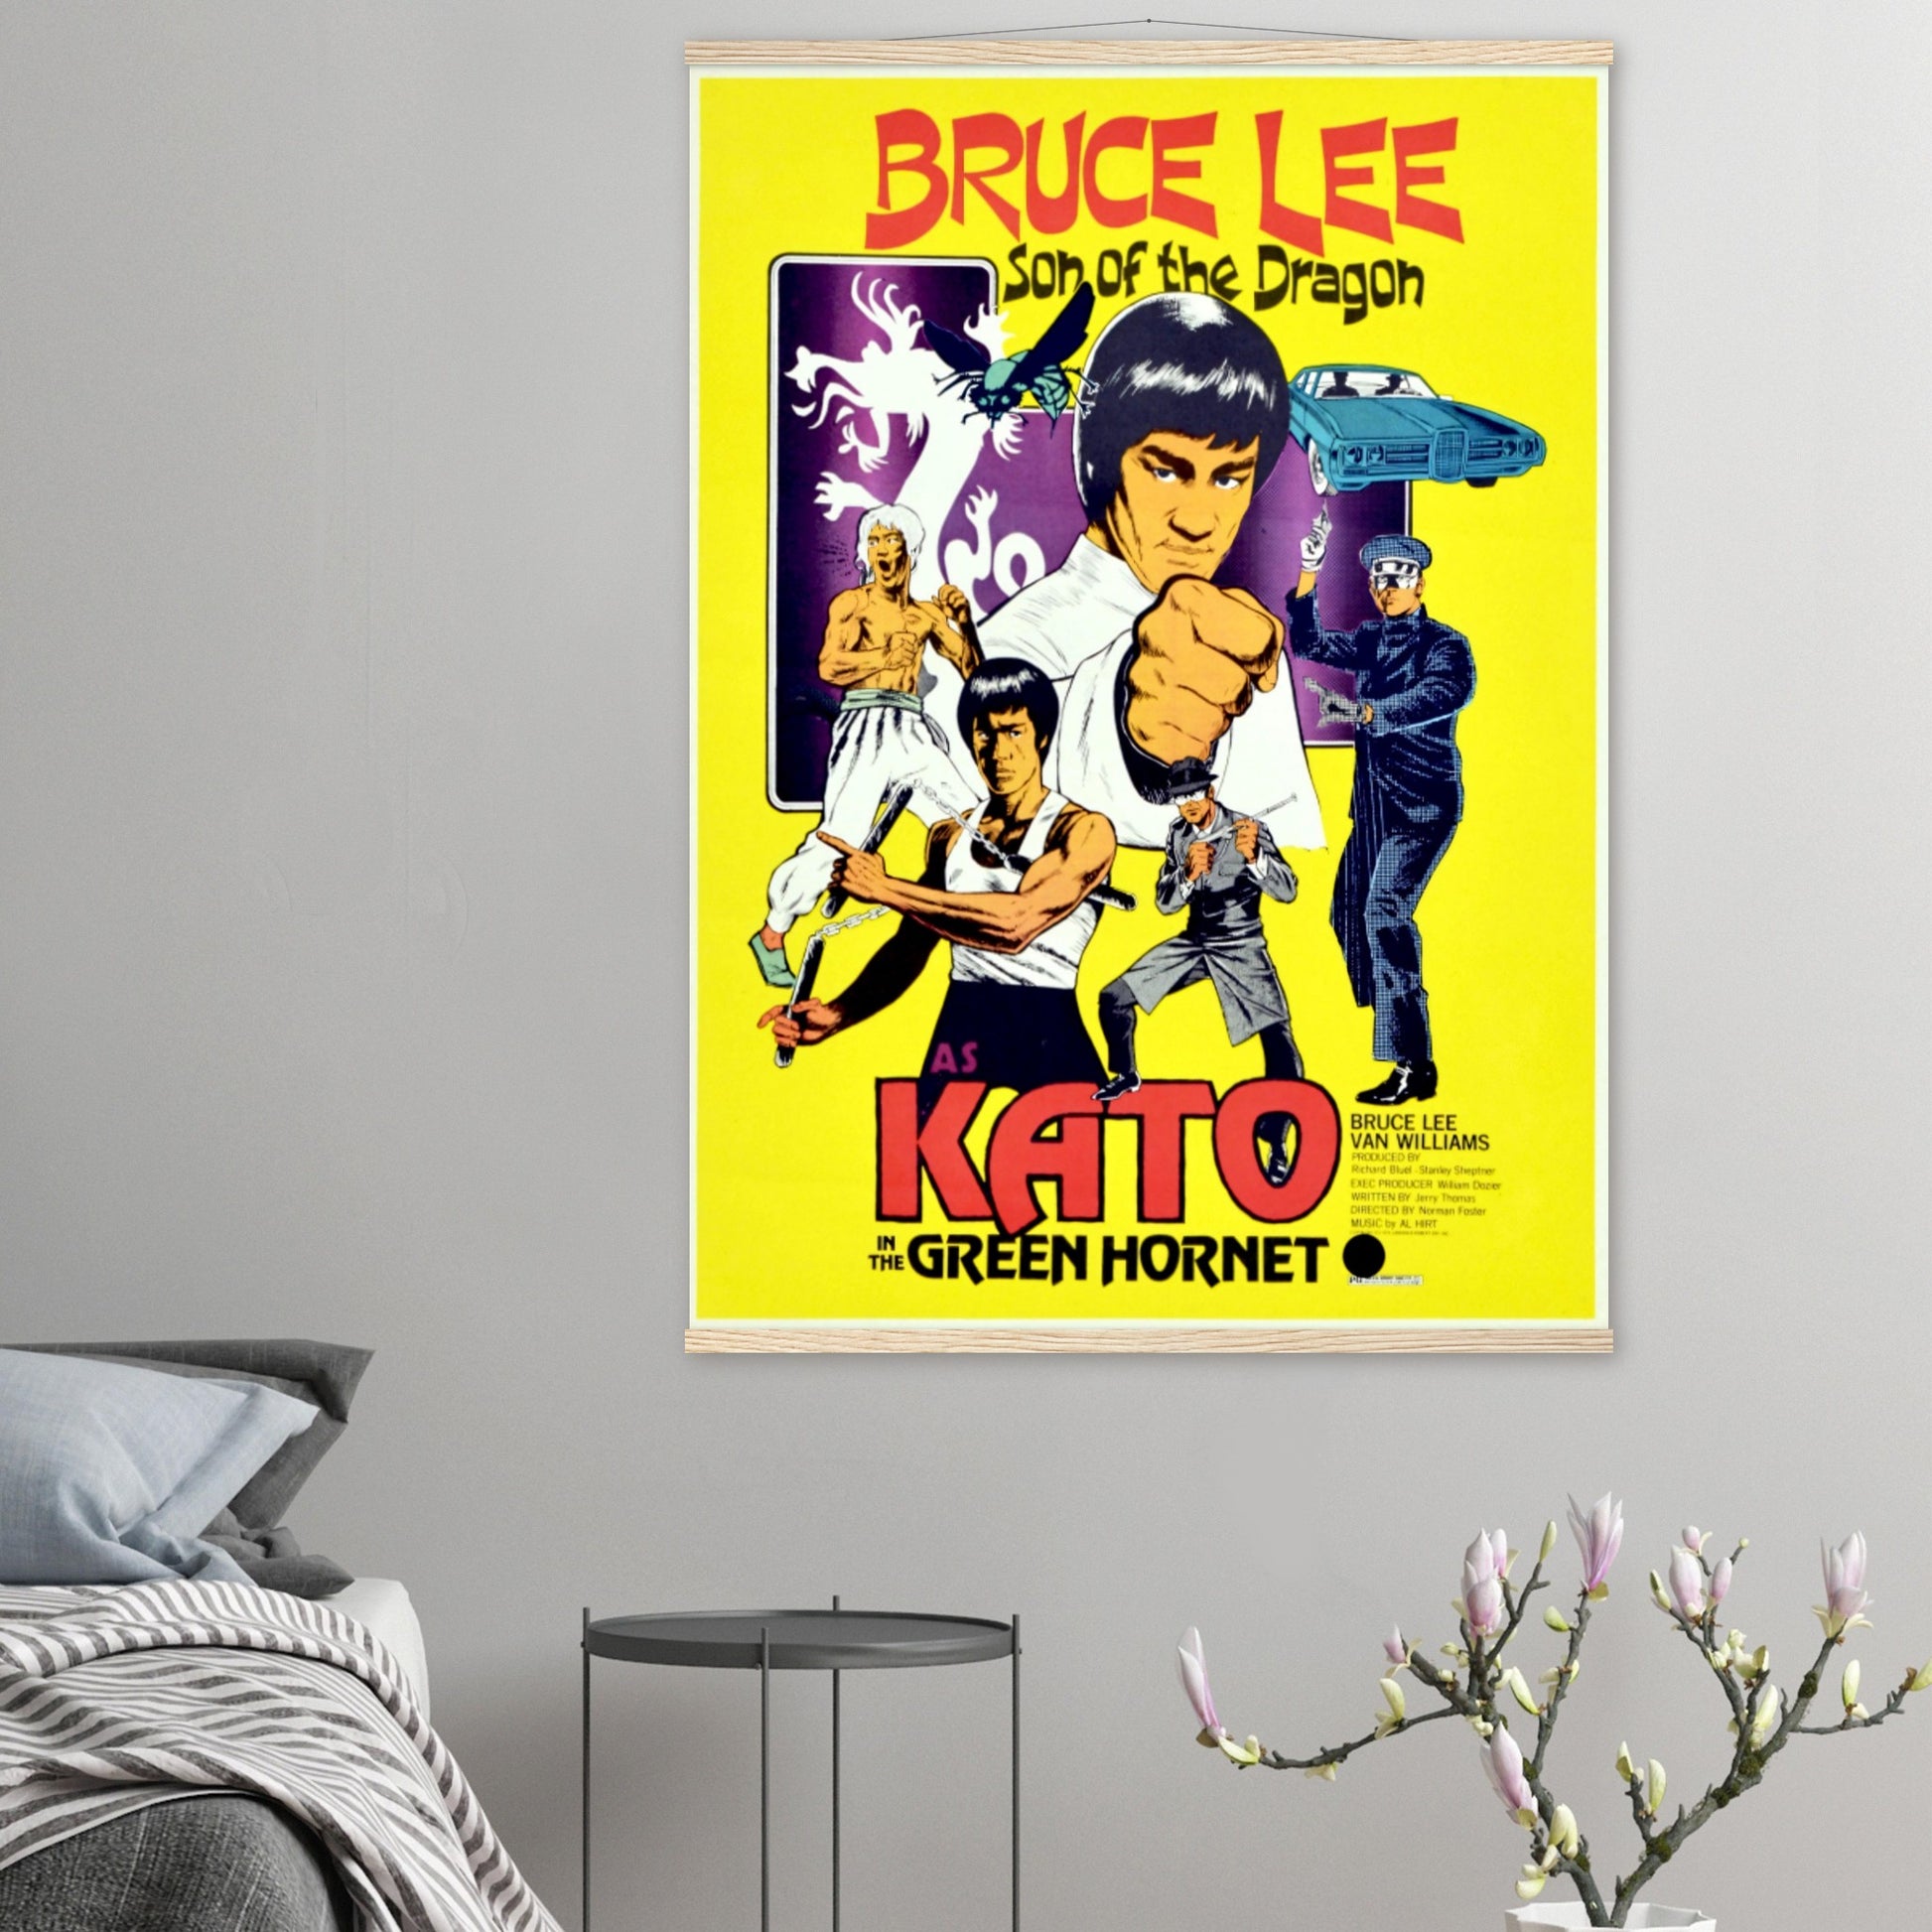 Bruce Lee Vintage Poster Reprint on Premium Matte Paper - Posterify